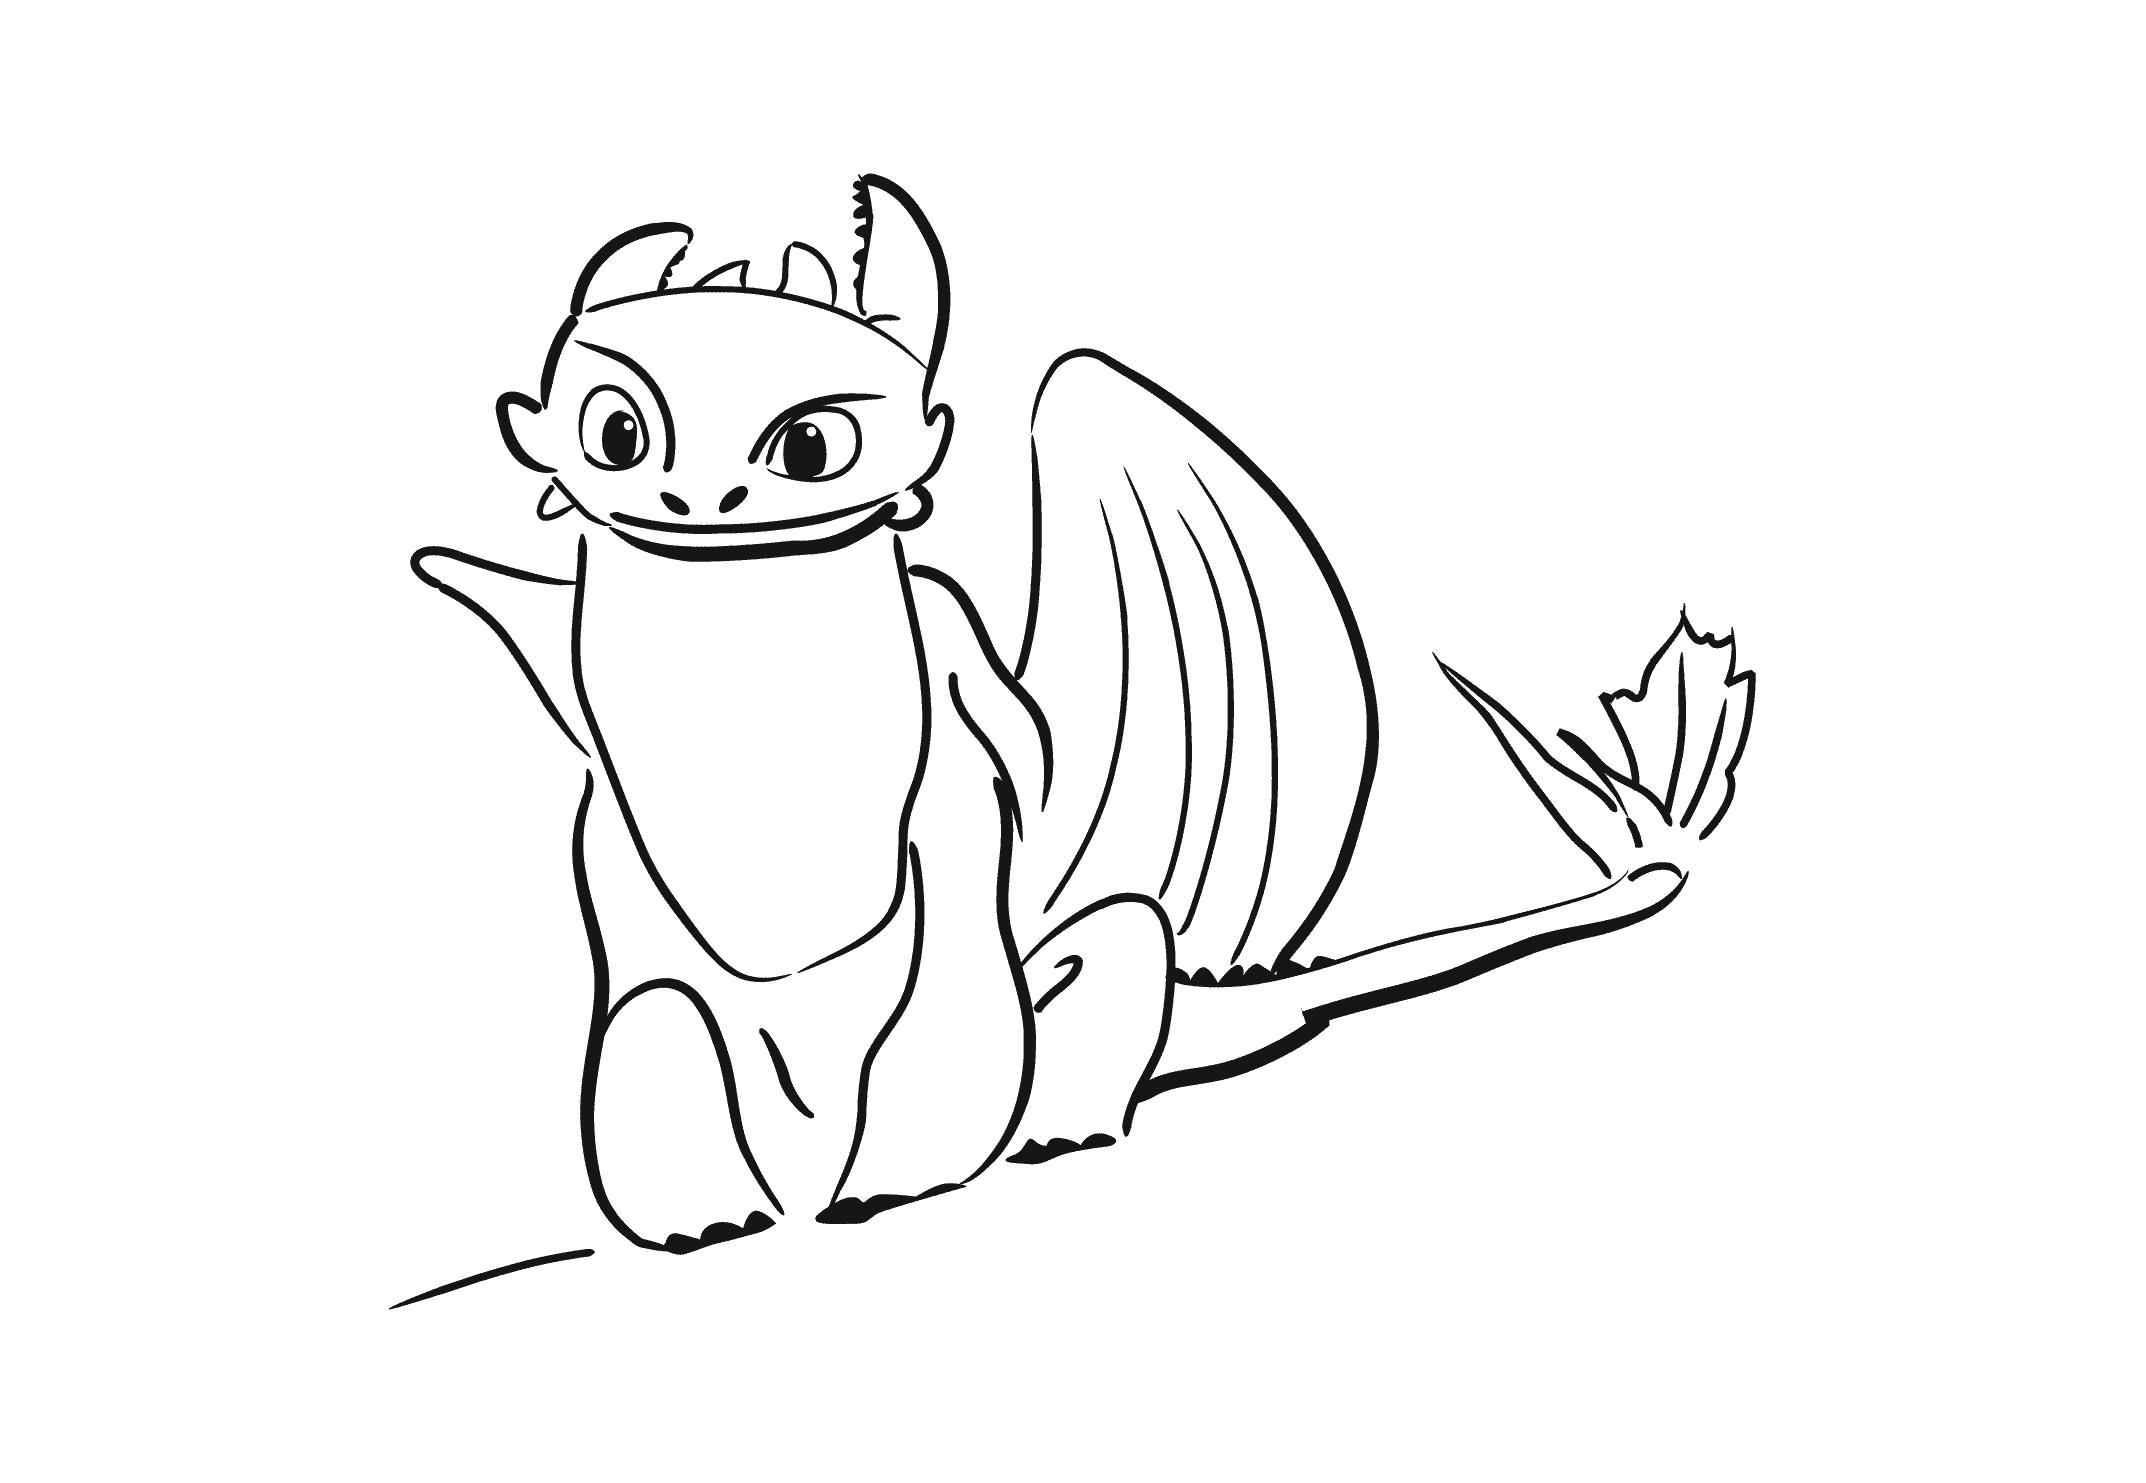 Раскраска Беззубик -  из мультфильма Как приручить дракона, для детей (Распечатать/скачать). Скачать дракон.  Распечатать мифические существа